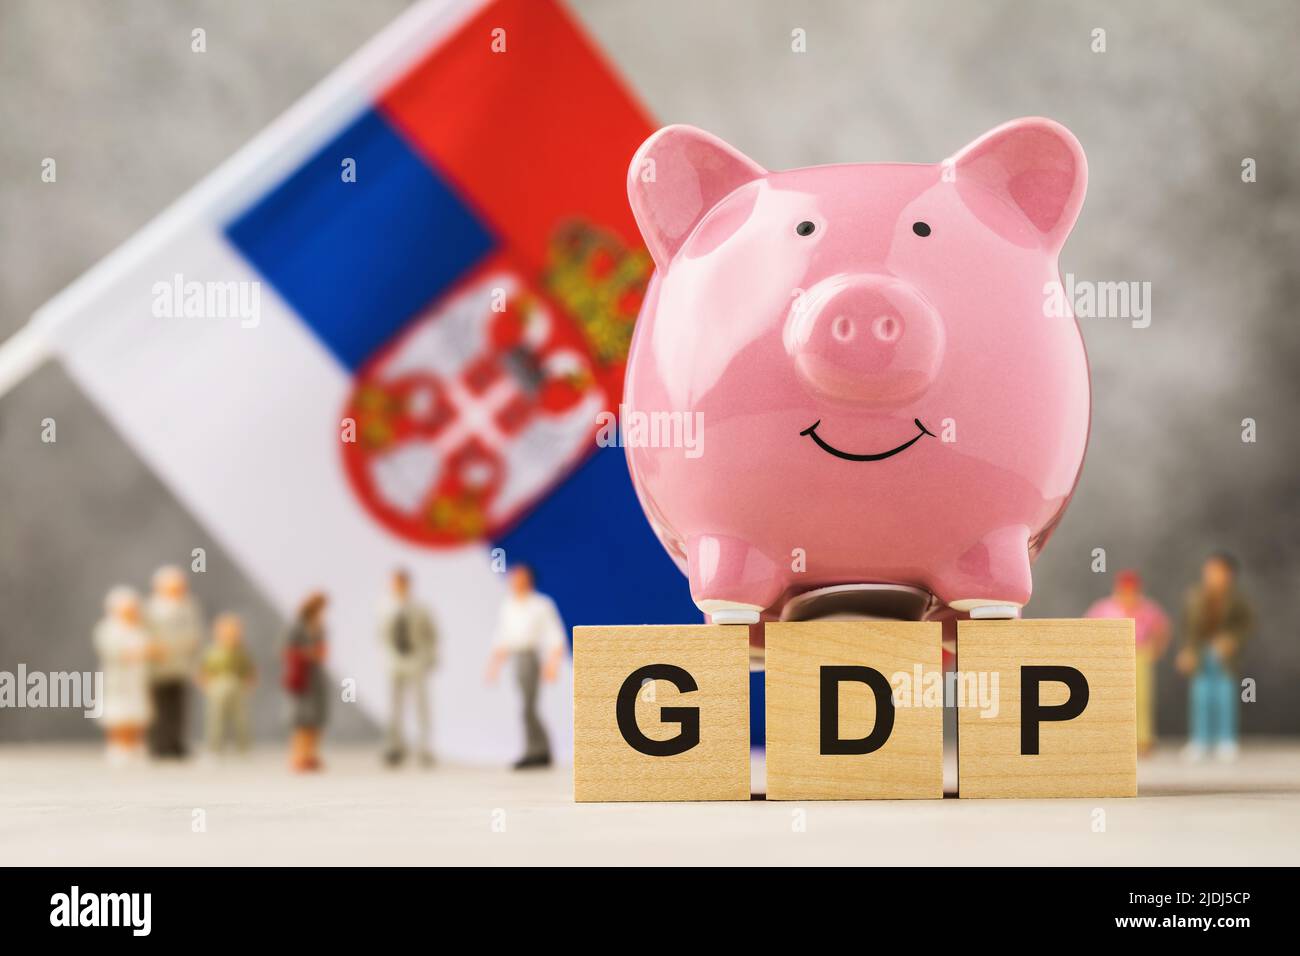 Banco de lechujas, cubos de madera con texto, juguetes hechos de plástico y una bandera sobre un fondo abstracto, un concepto sobre el tema del PIB serbio Foto de stock